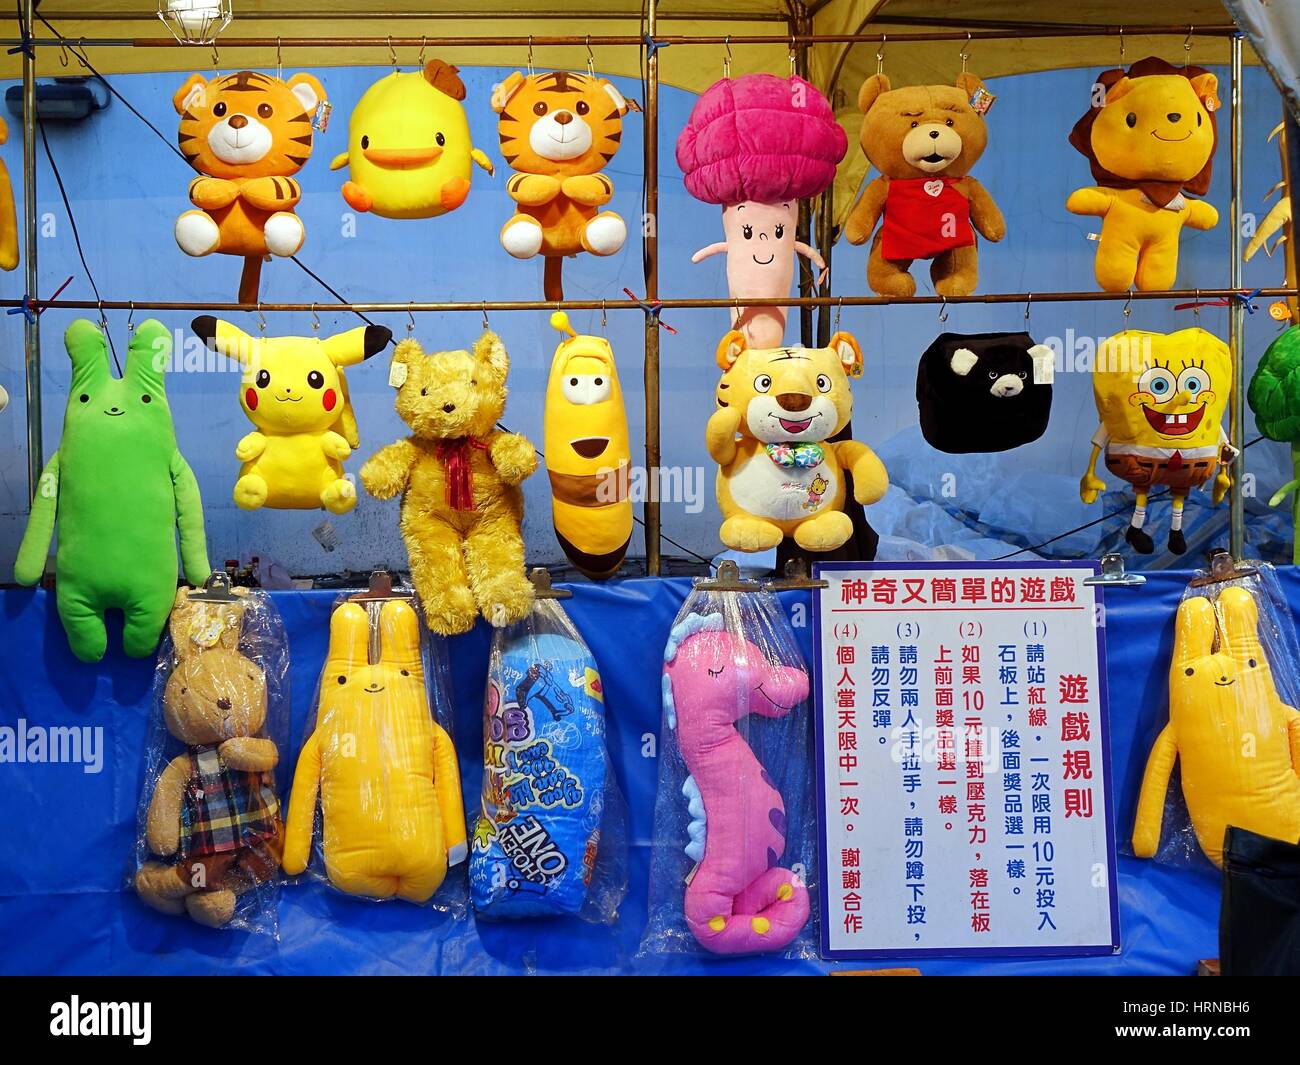 KAOHSIUNG, Taiwan -- Febbraio 13, 2016: peluche e giocattoli sono offerti come premi in un gioco di abilità durante il 2016 festa delle lanterne. Foto Stock